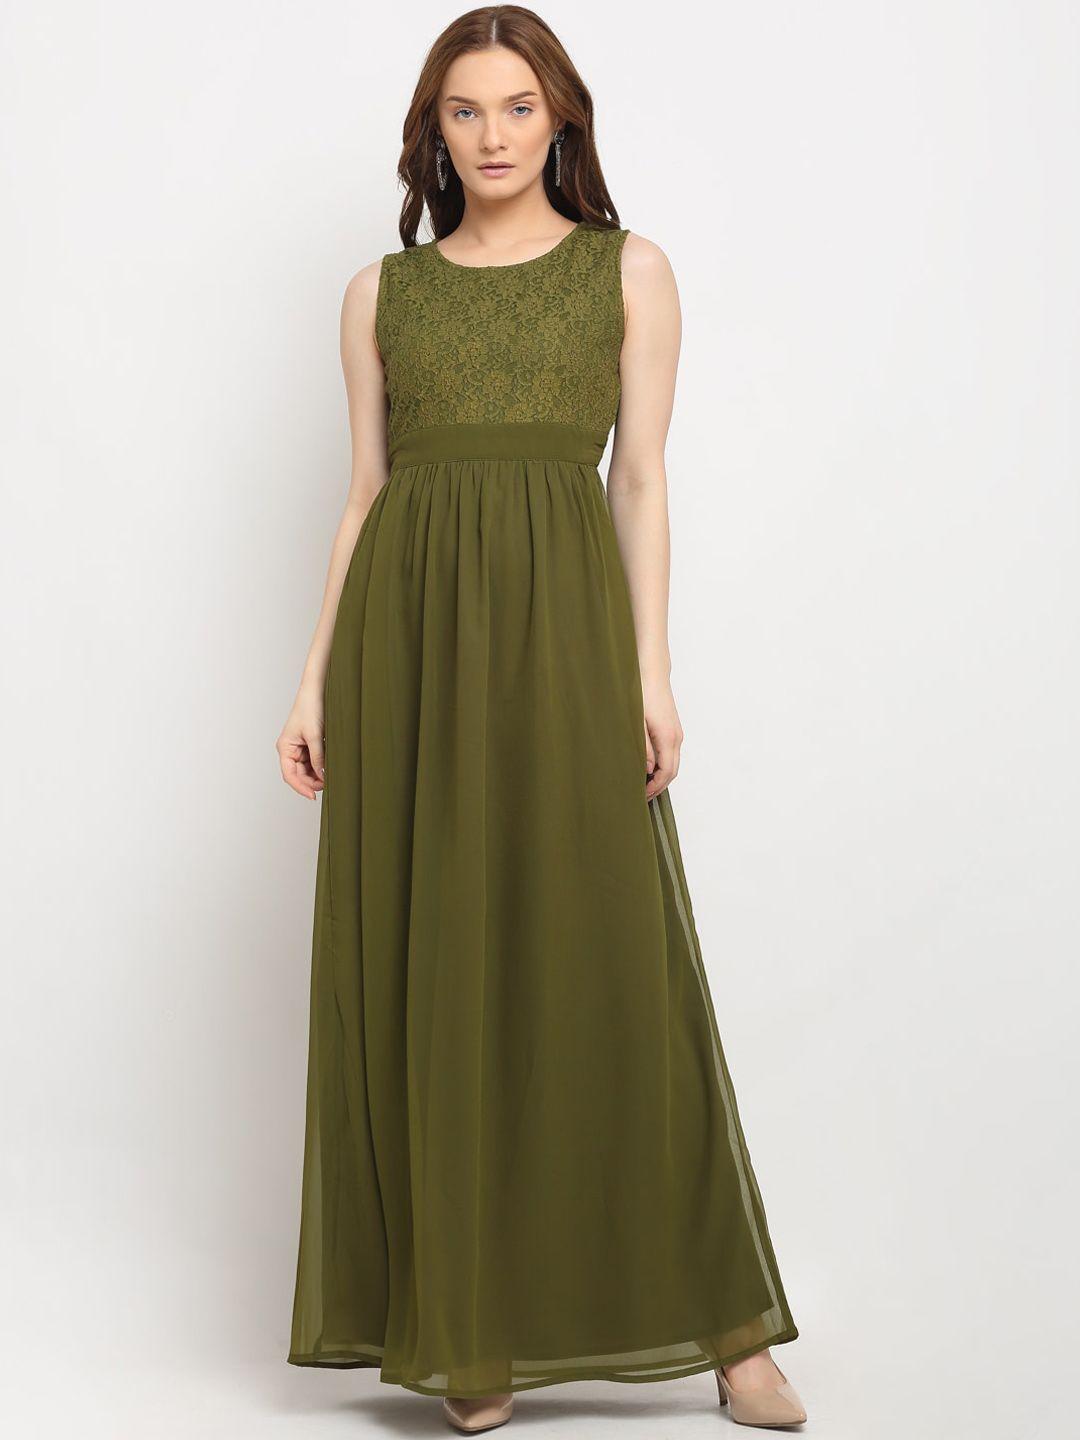 la-zoire-olive-green-georgette-lace-yoke-maxi-dress